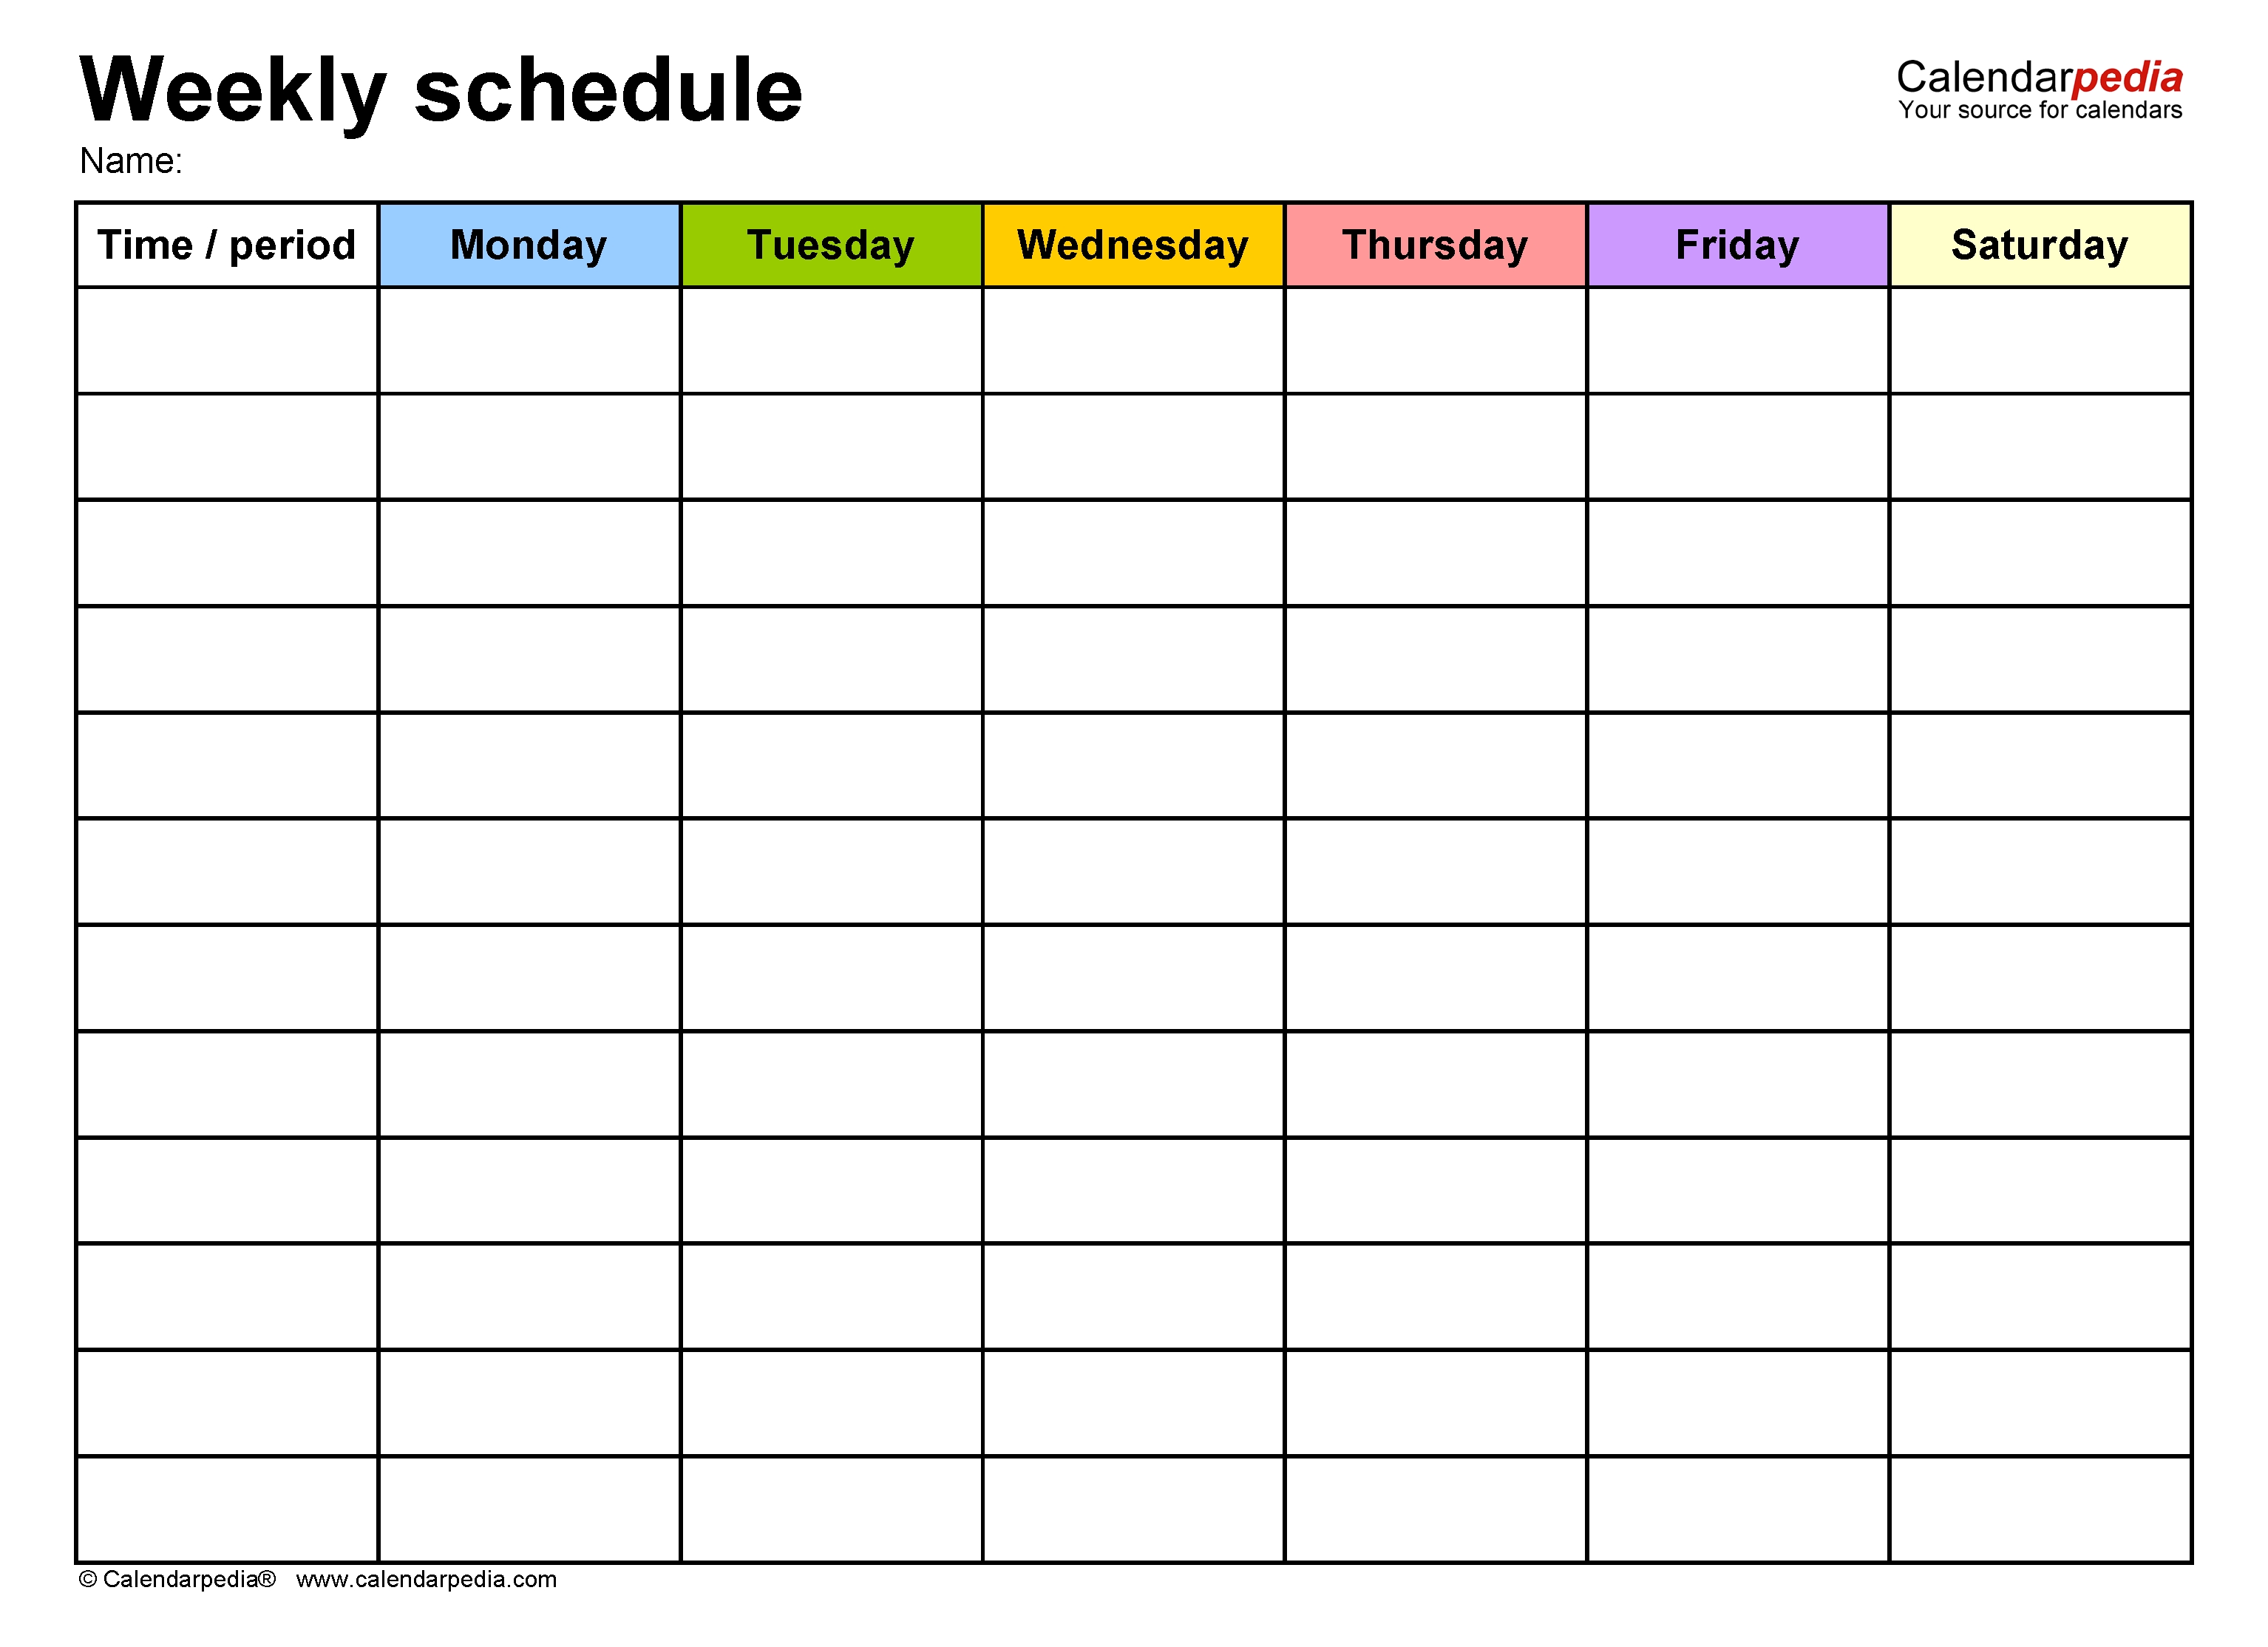 Free Weekly Schedule Templates For Word - 18 Templates-Blank Academic Week By Week Calendar